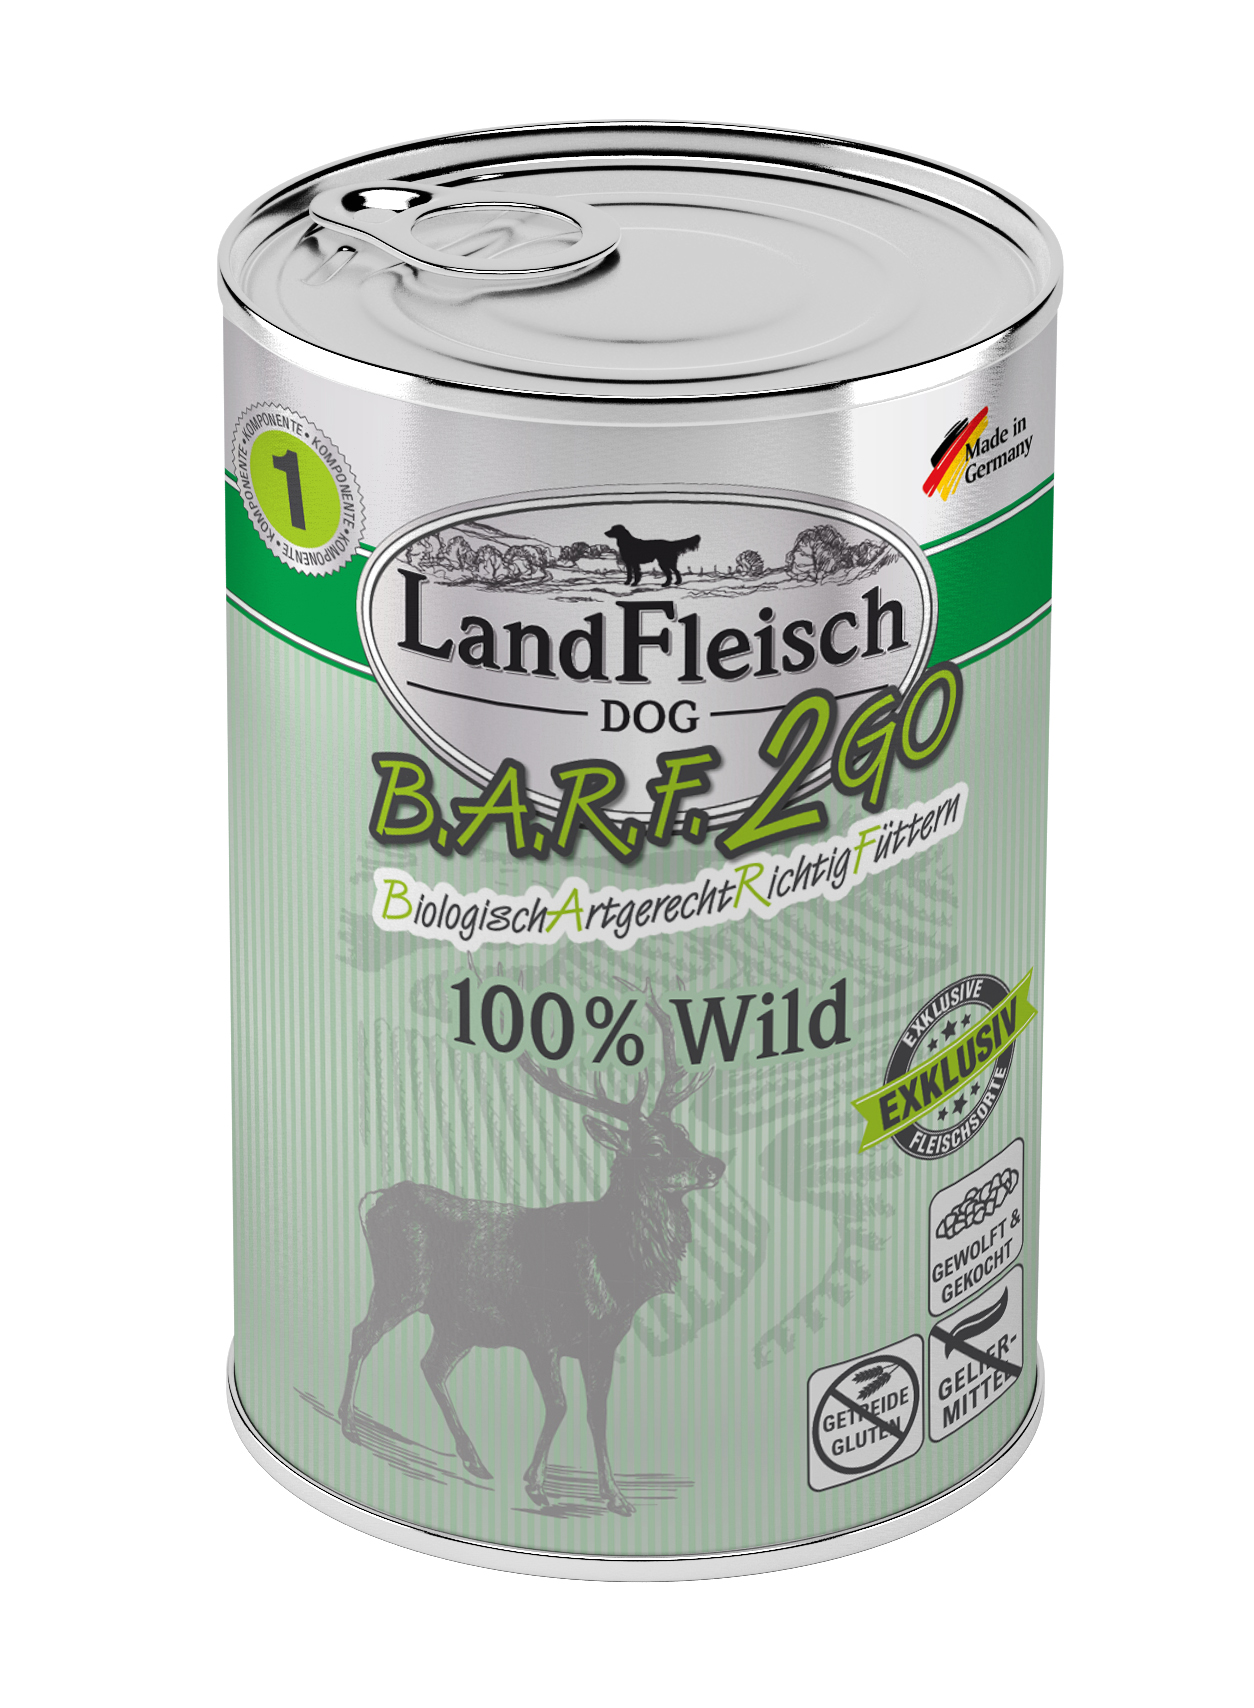 LandFleisch B.A.R.F.2GO Exklusiv 100% vom Wild 400g